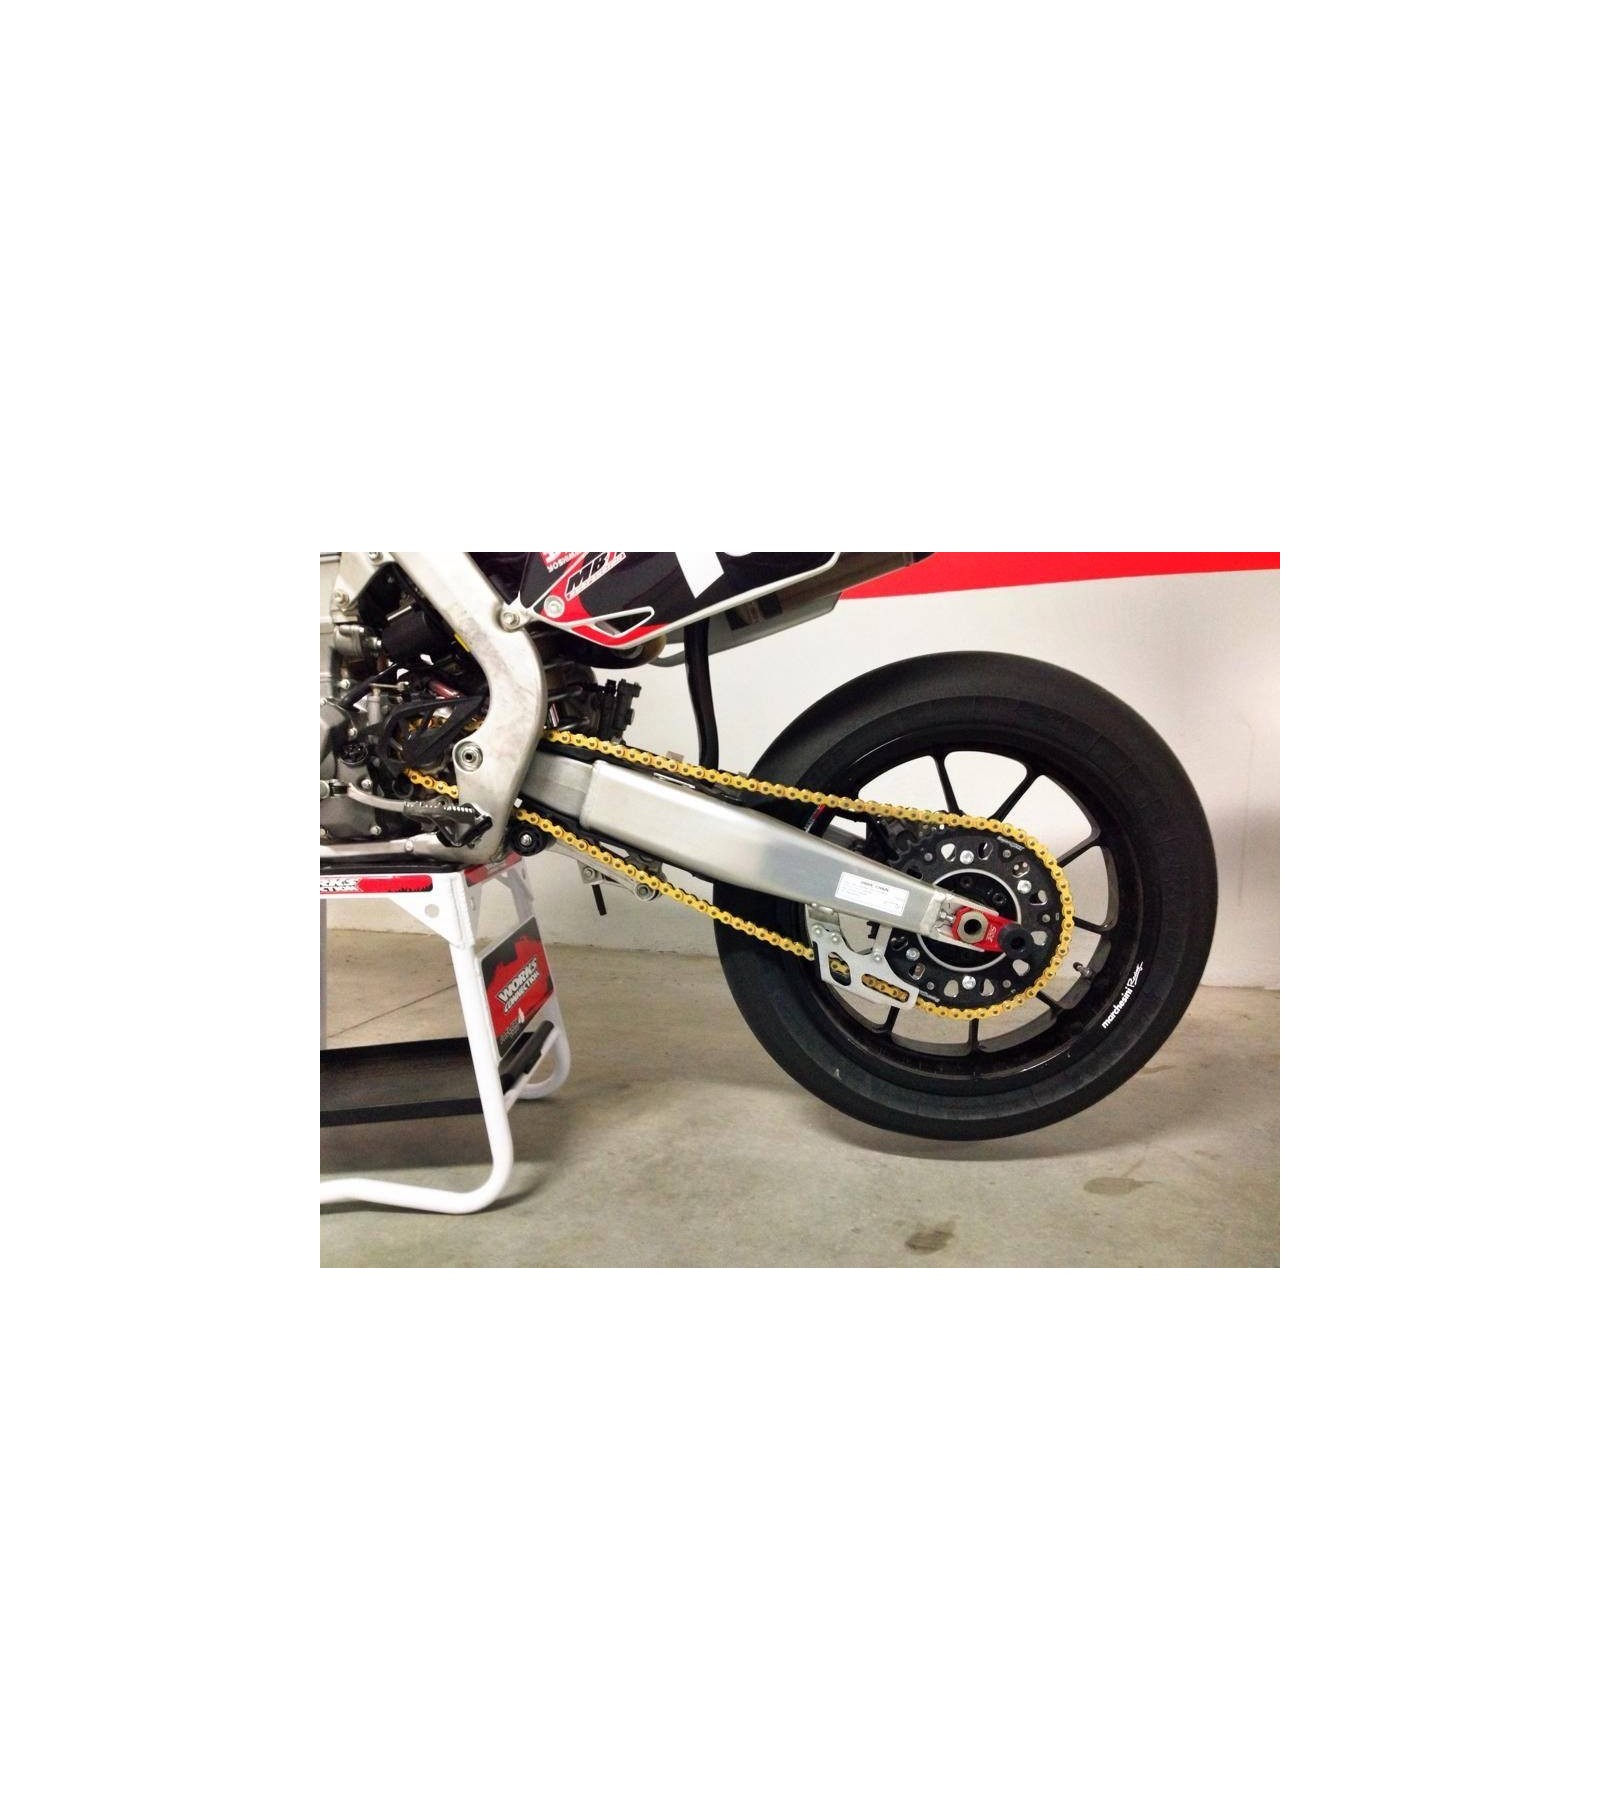 Slider Revit Knee Type A Noir - Sliders moto - TEAMAXE